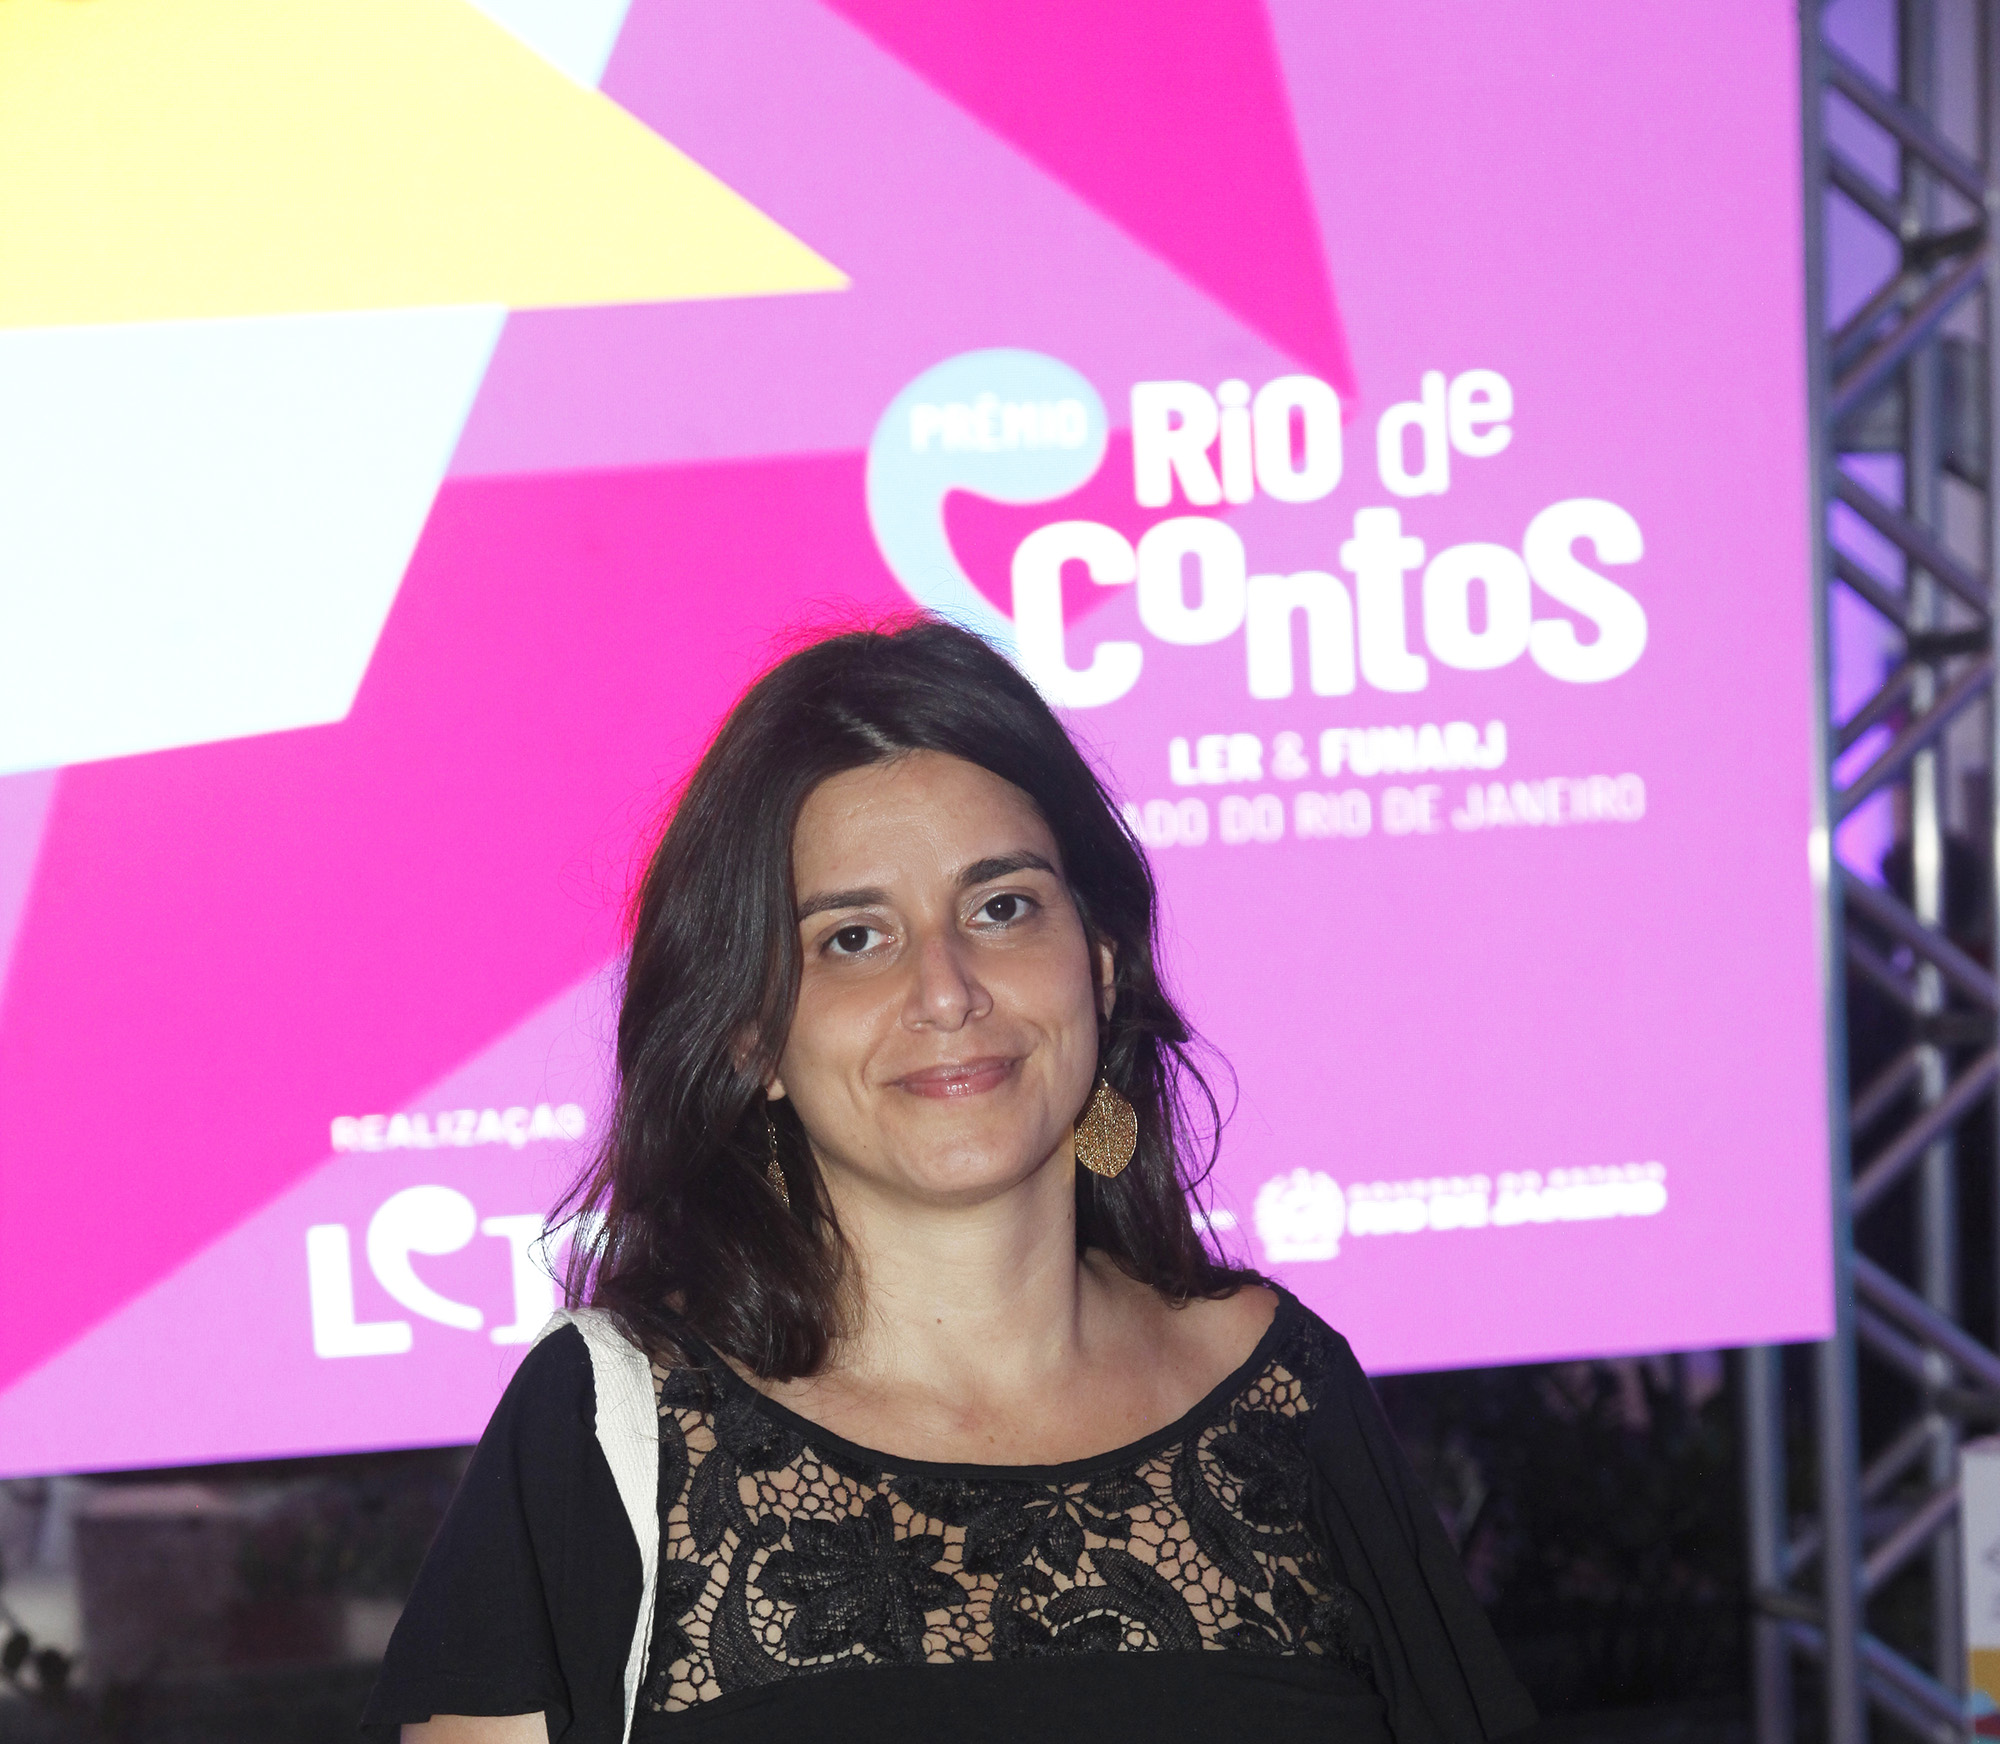 Prêmio Rio de Contos abre inscrições para selecionar novos talentos literários no estado do Rio de Janeiro